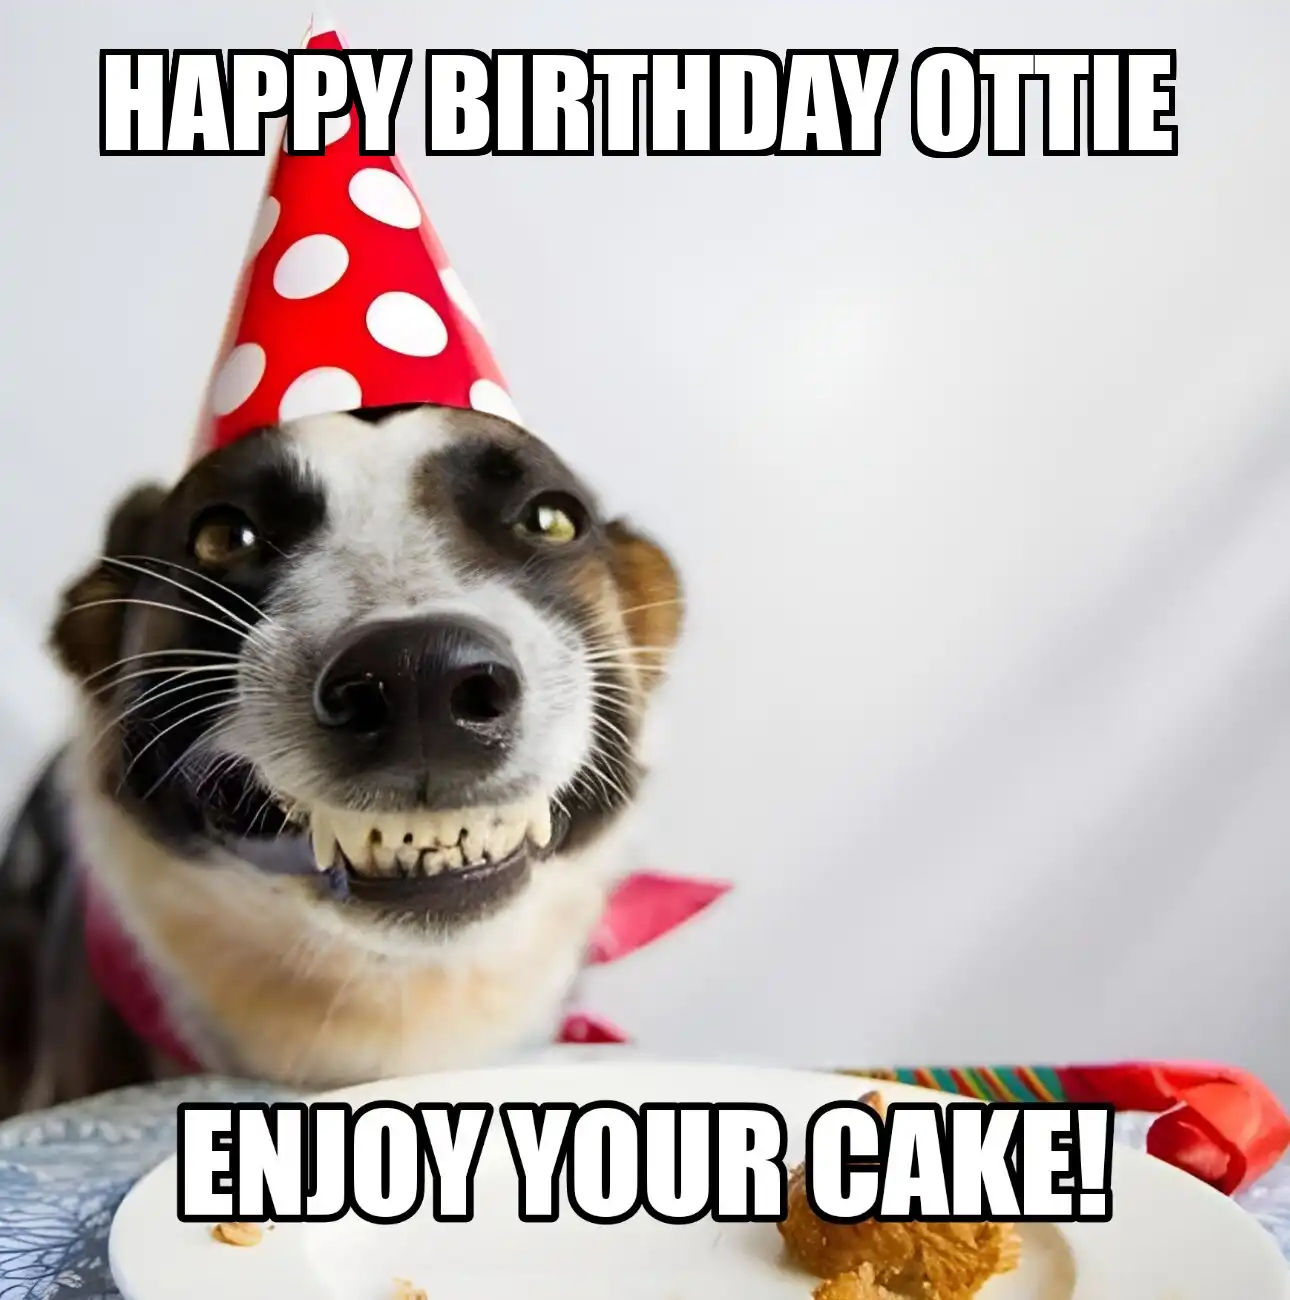 Happy Birthday Ottie Enjoy Your Cake Dog Meme